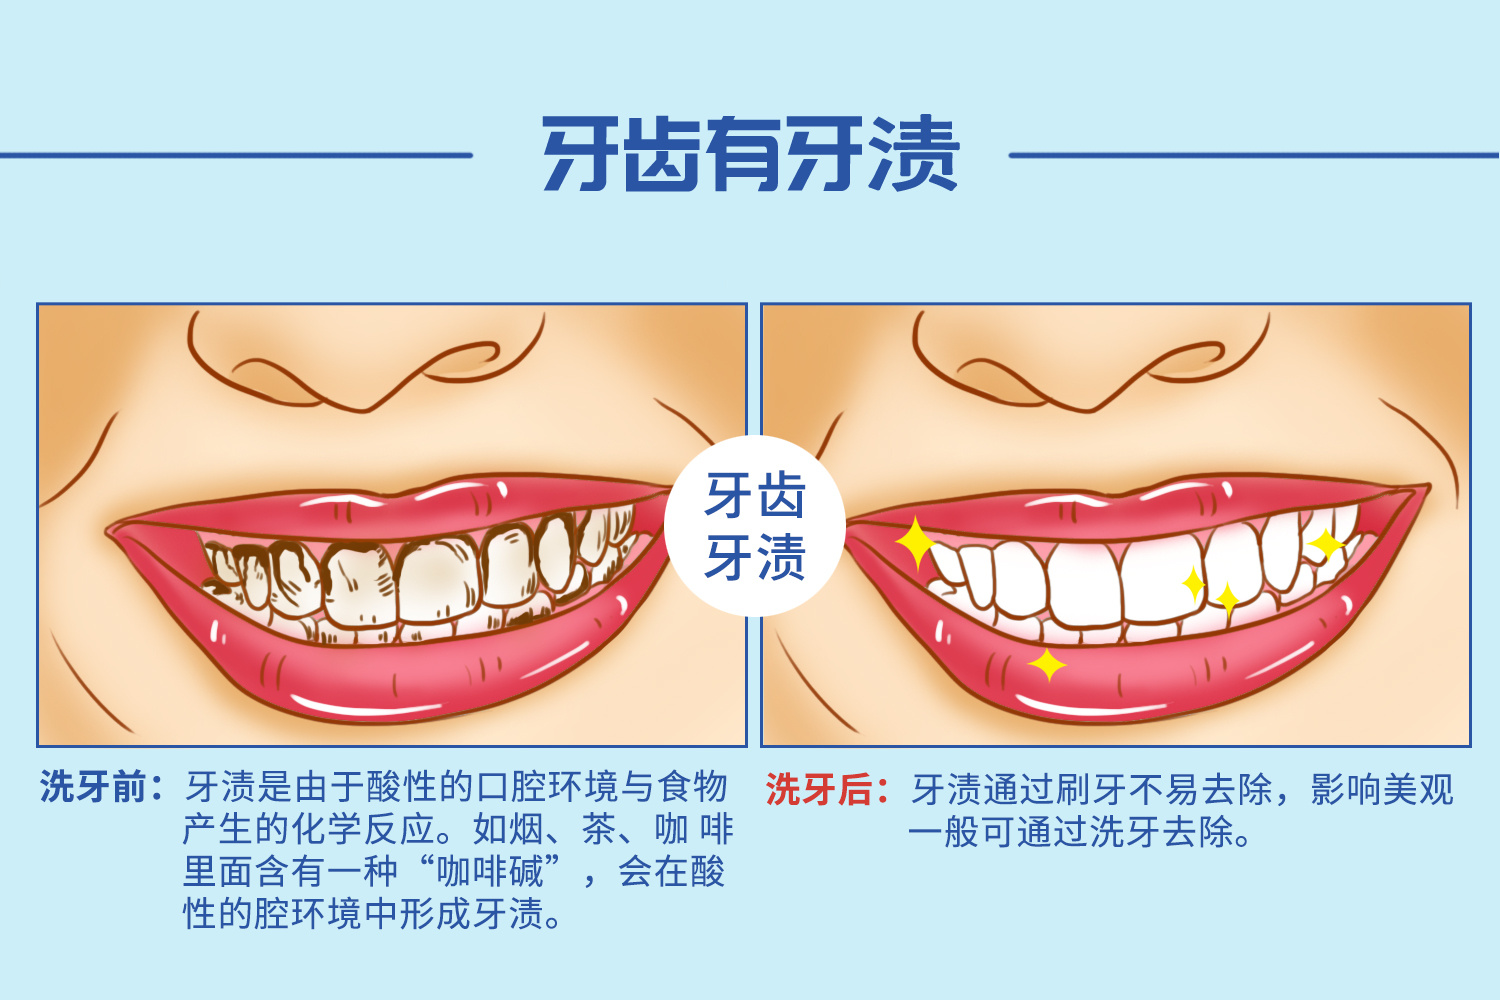 定期洗牙,牙周病,牙结石,牙龈炎,牙齿龋坏,牙周组织,口腔卫生,牙医,牙周检查,牙槽骨,口腔检查,牙菌斑